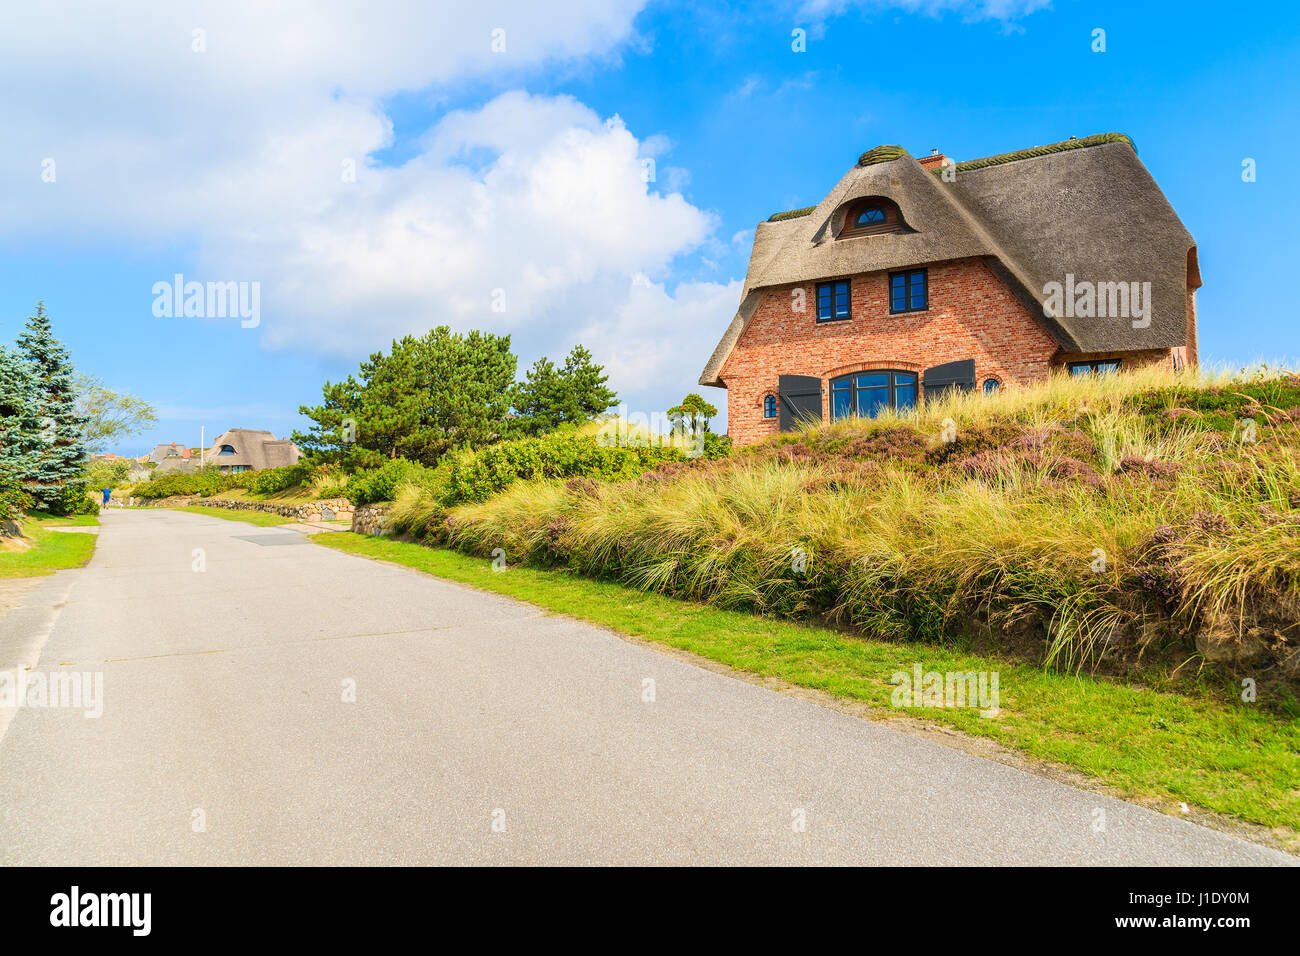 Carretera en Westerheide aldea típica casa en el lateral, isla de Sylt, Alemania Foto de stock